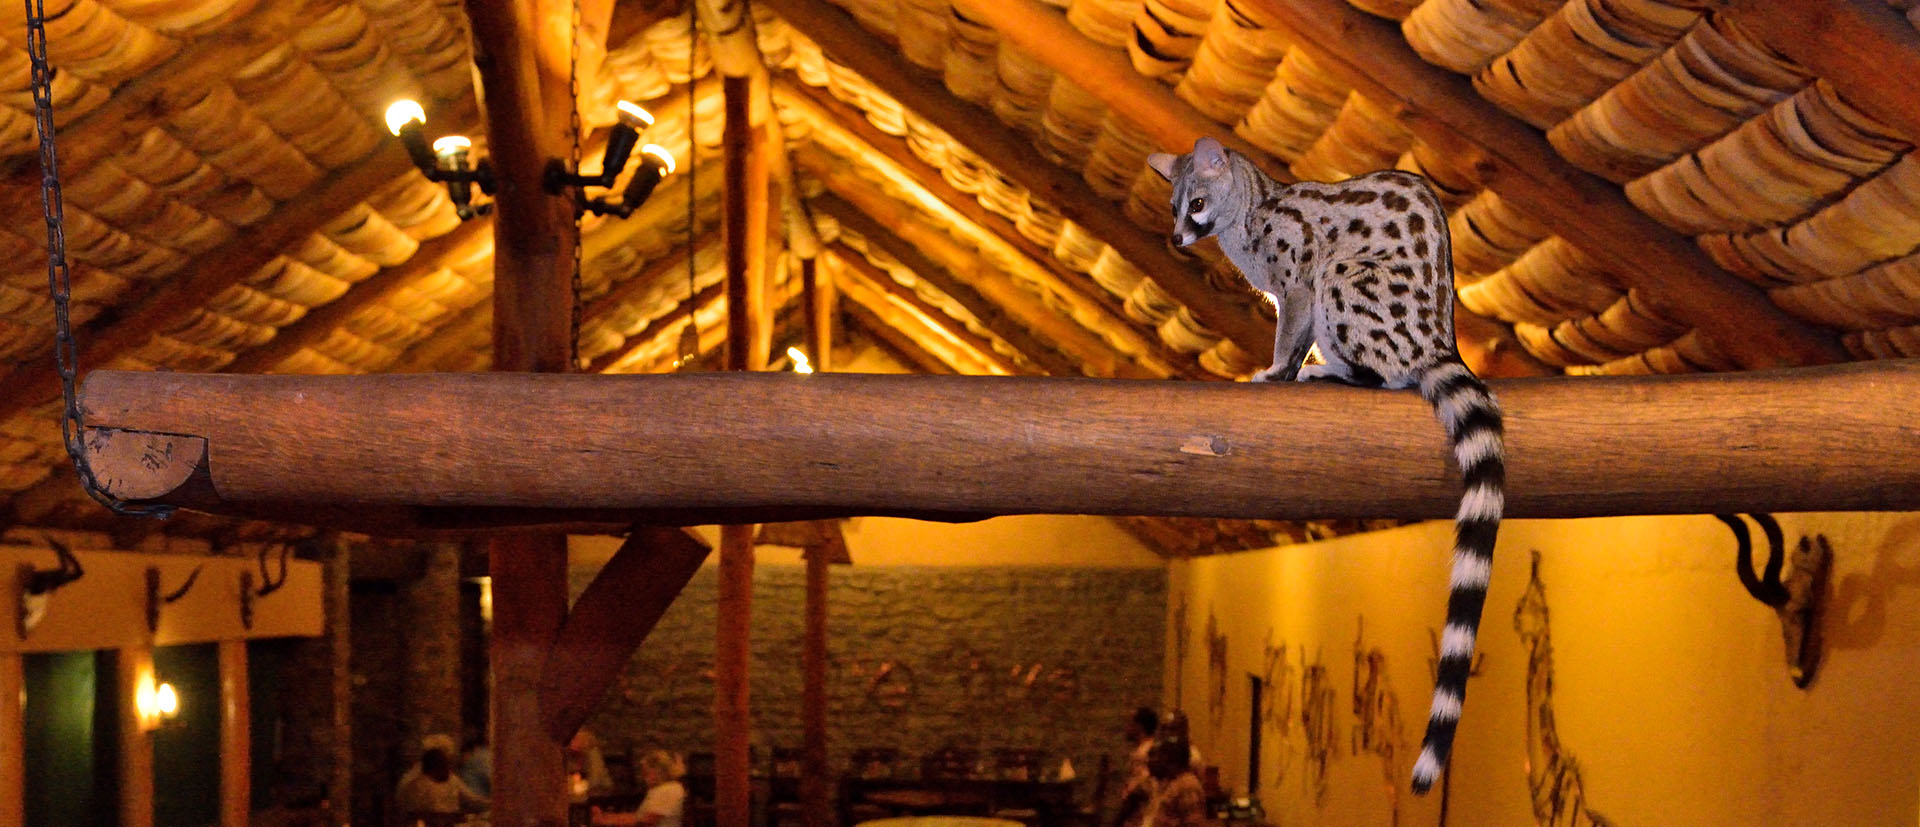 Genet in the diningroom of the Ndutu Safari Lodge, Ngorongoro Safari Lodge, Tanzania.